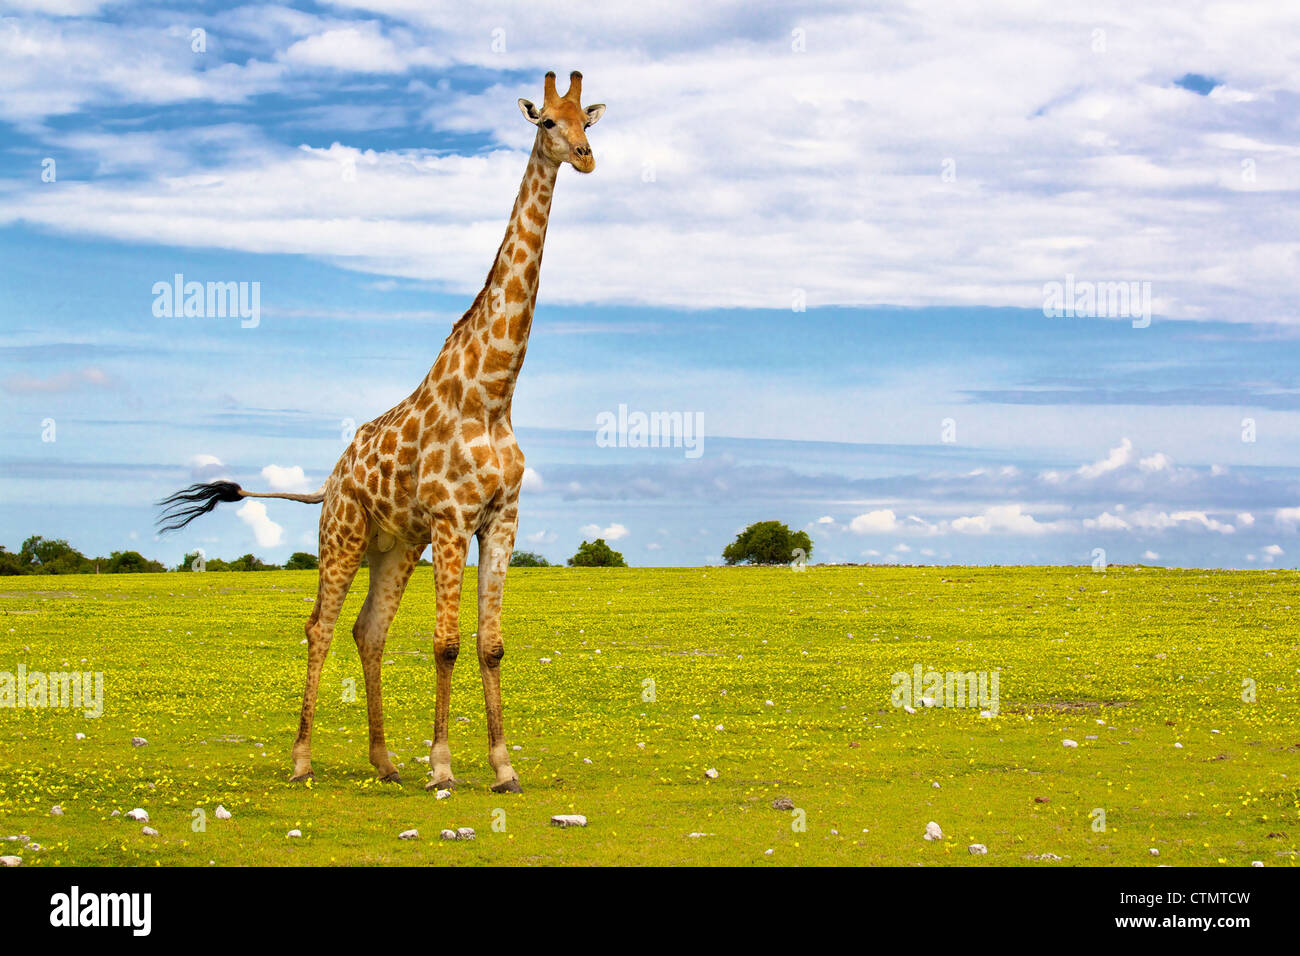 Une vue sur toute la longueur d'une girafe, Etosha National Park, Etosha, Namibie Banque D'Images